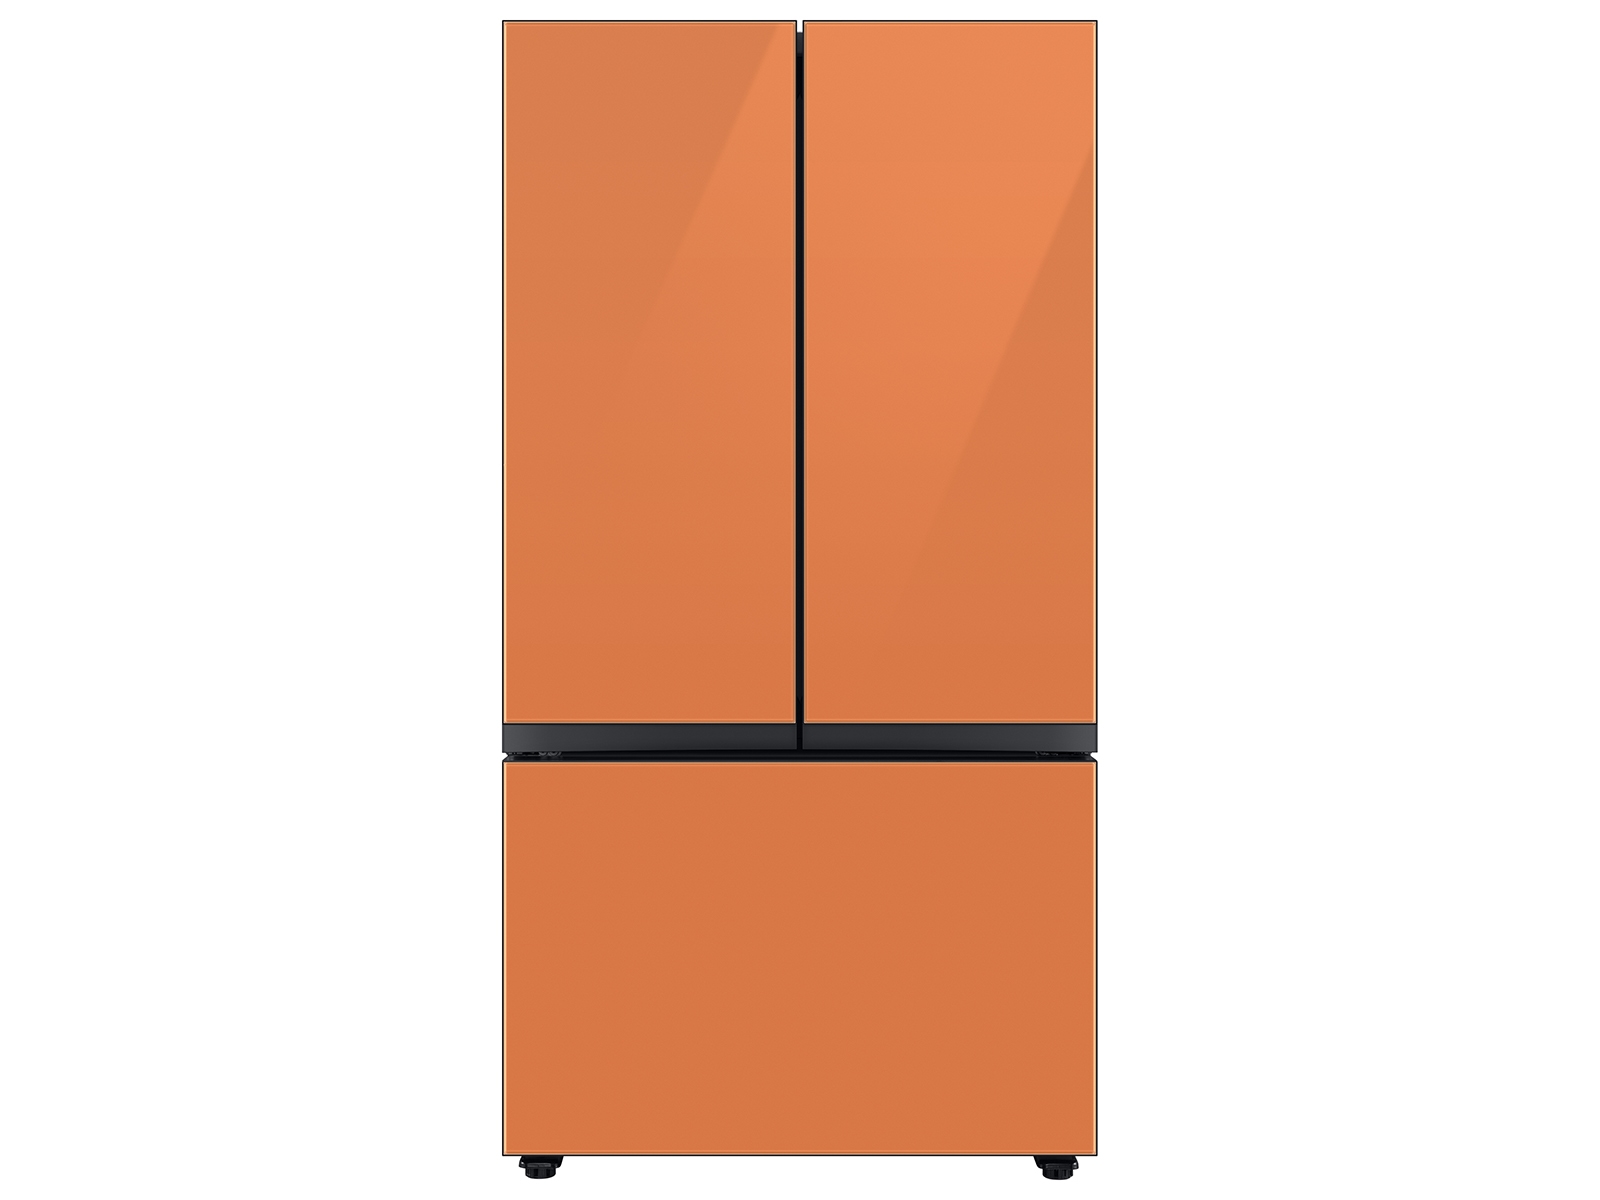 Bespoke 3-Door French Door Refrigerator (24 cu. ft.) with Beverage Center&trade; in Clementine Glass